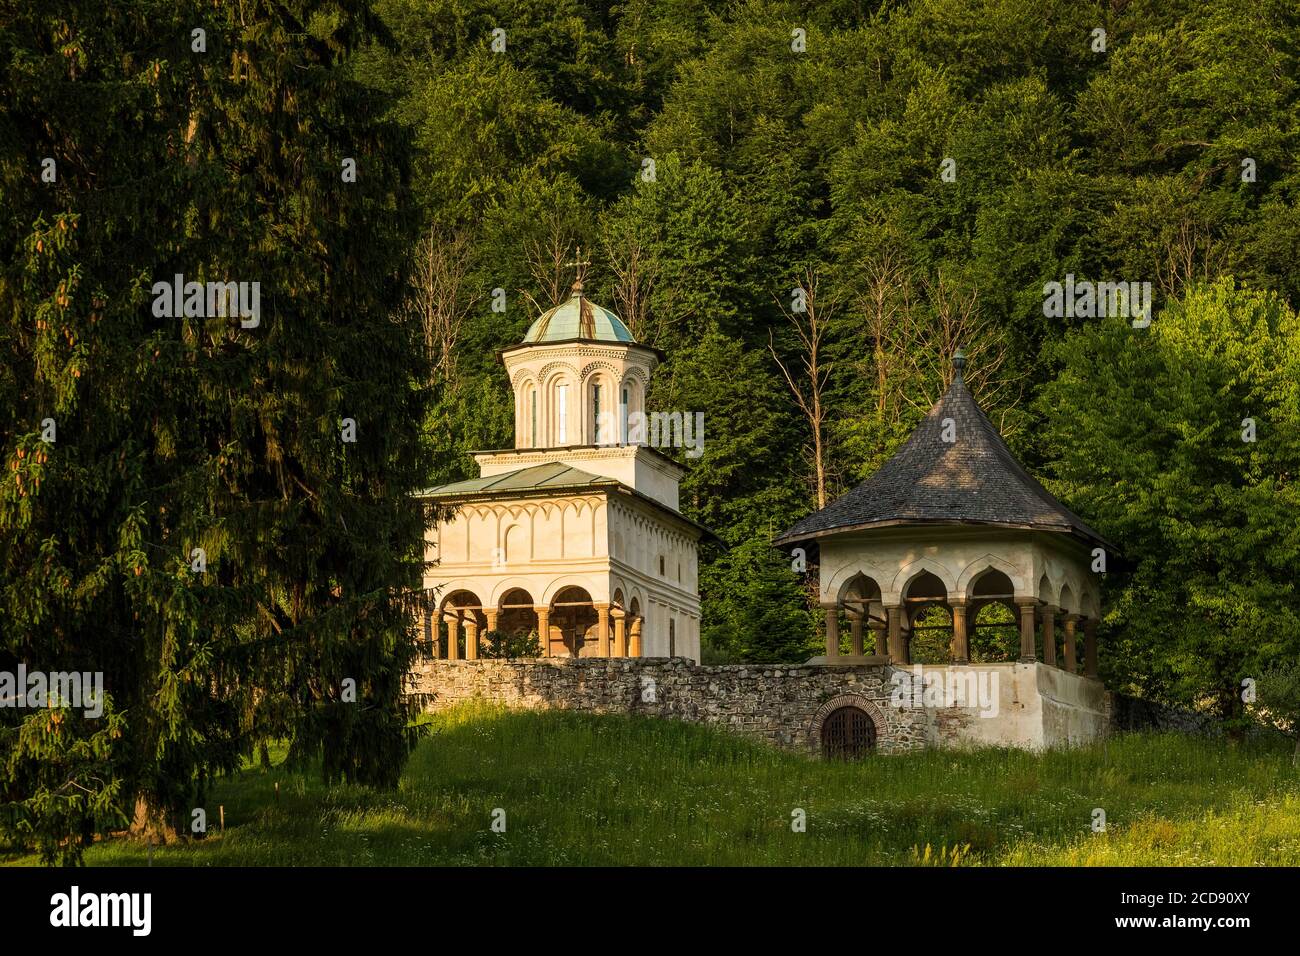 La Roumanie, la Valachie, Horezu, le monastère de Horezu a été inscrit comme site du patrimoine mondial de l'UNESCO en 1993 pour la qualité de conservation de ces peintures de plus de 300 ans Banque D'Images